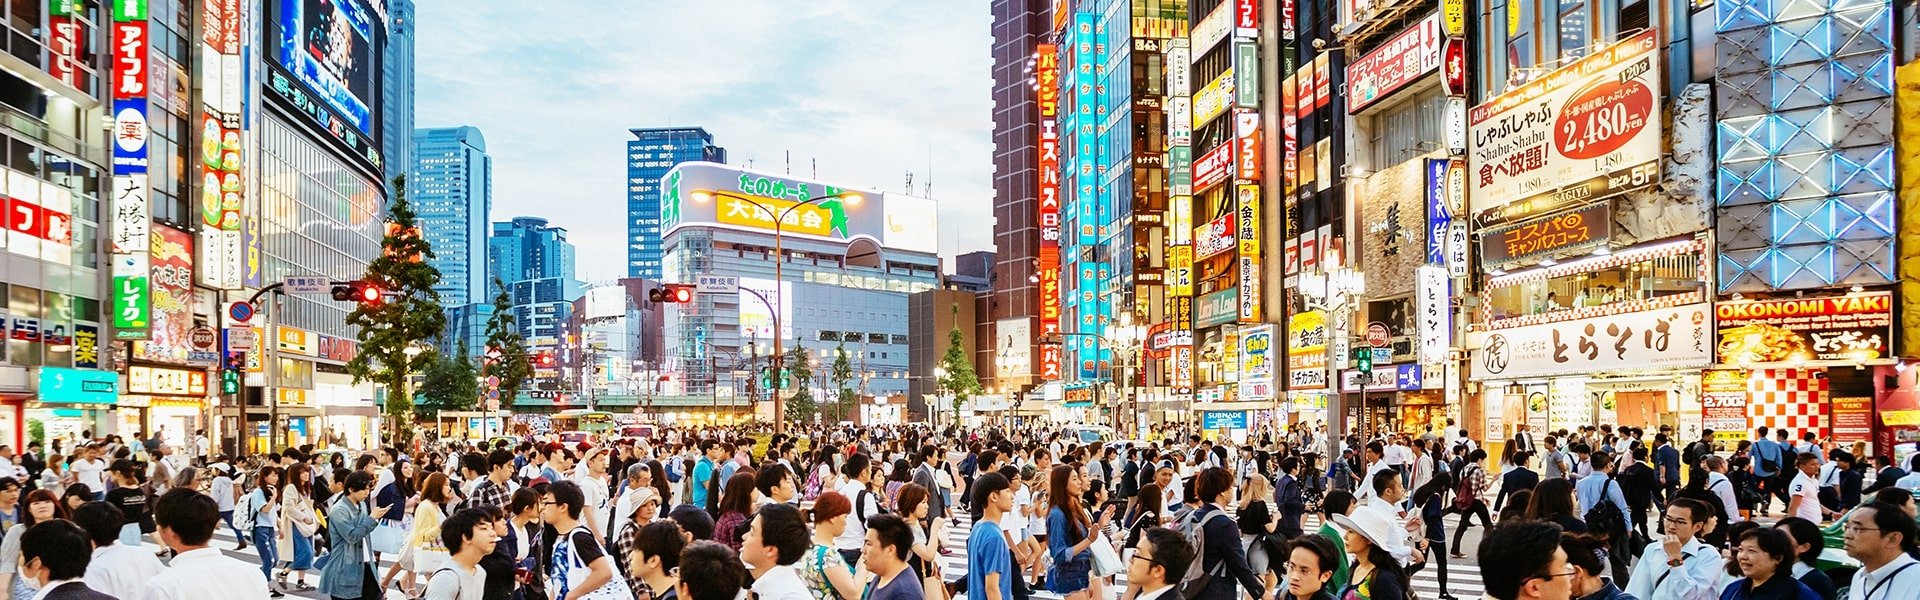 Japan street full of people